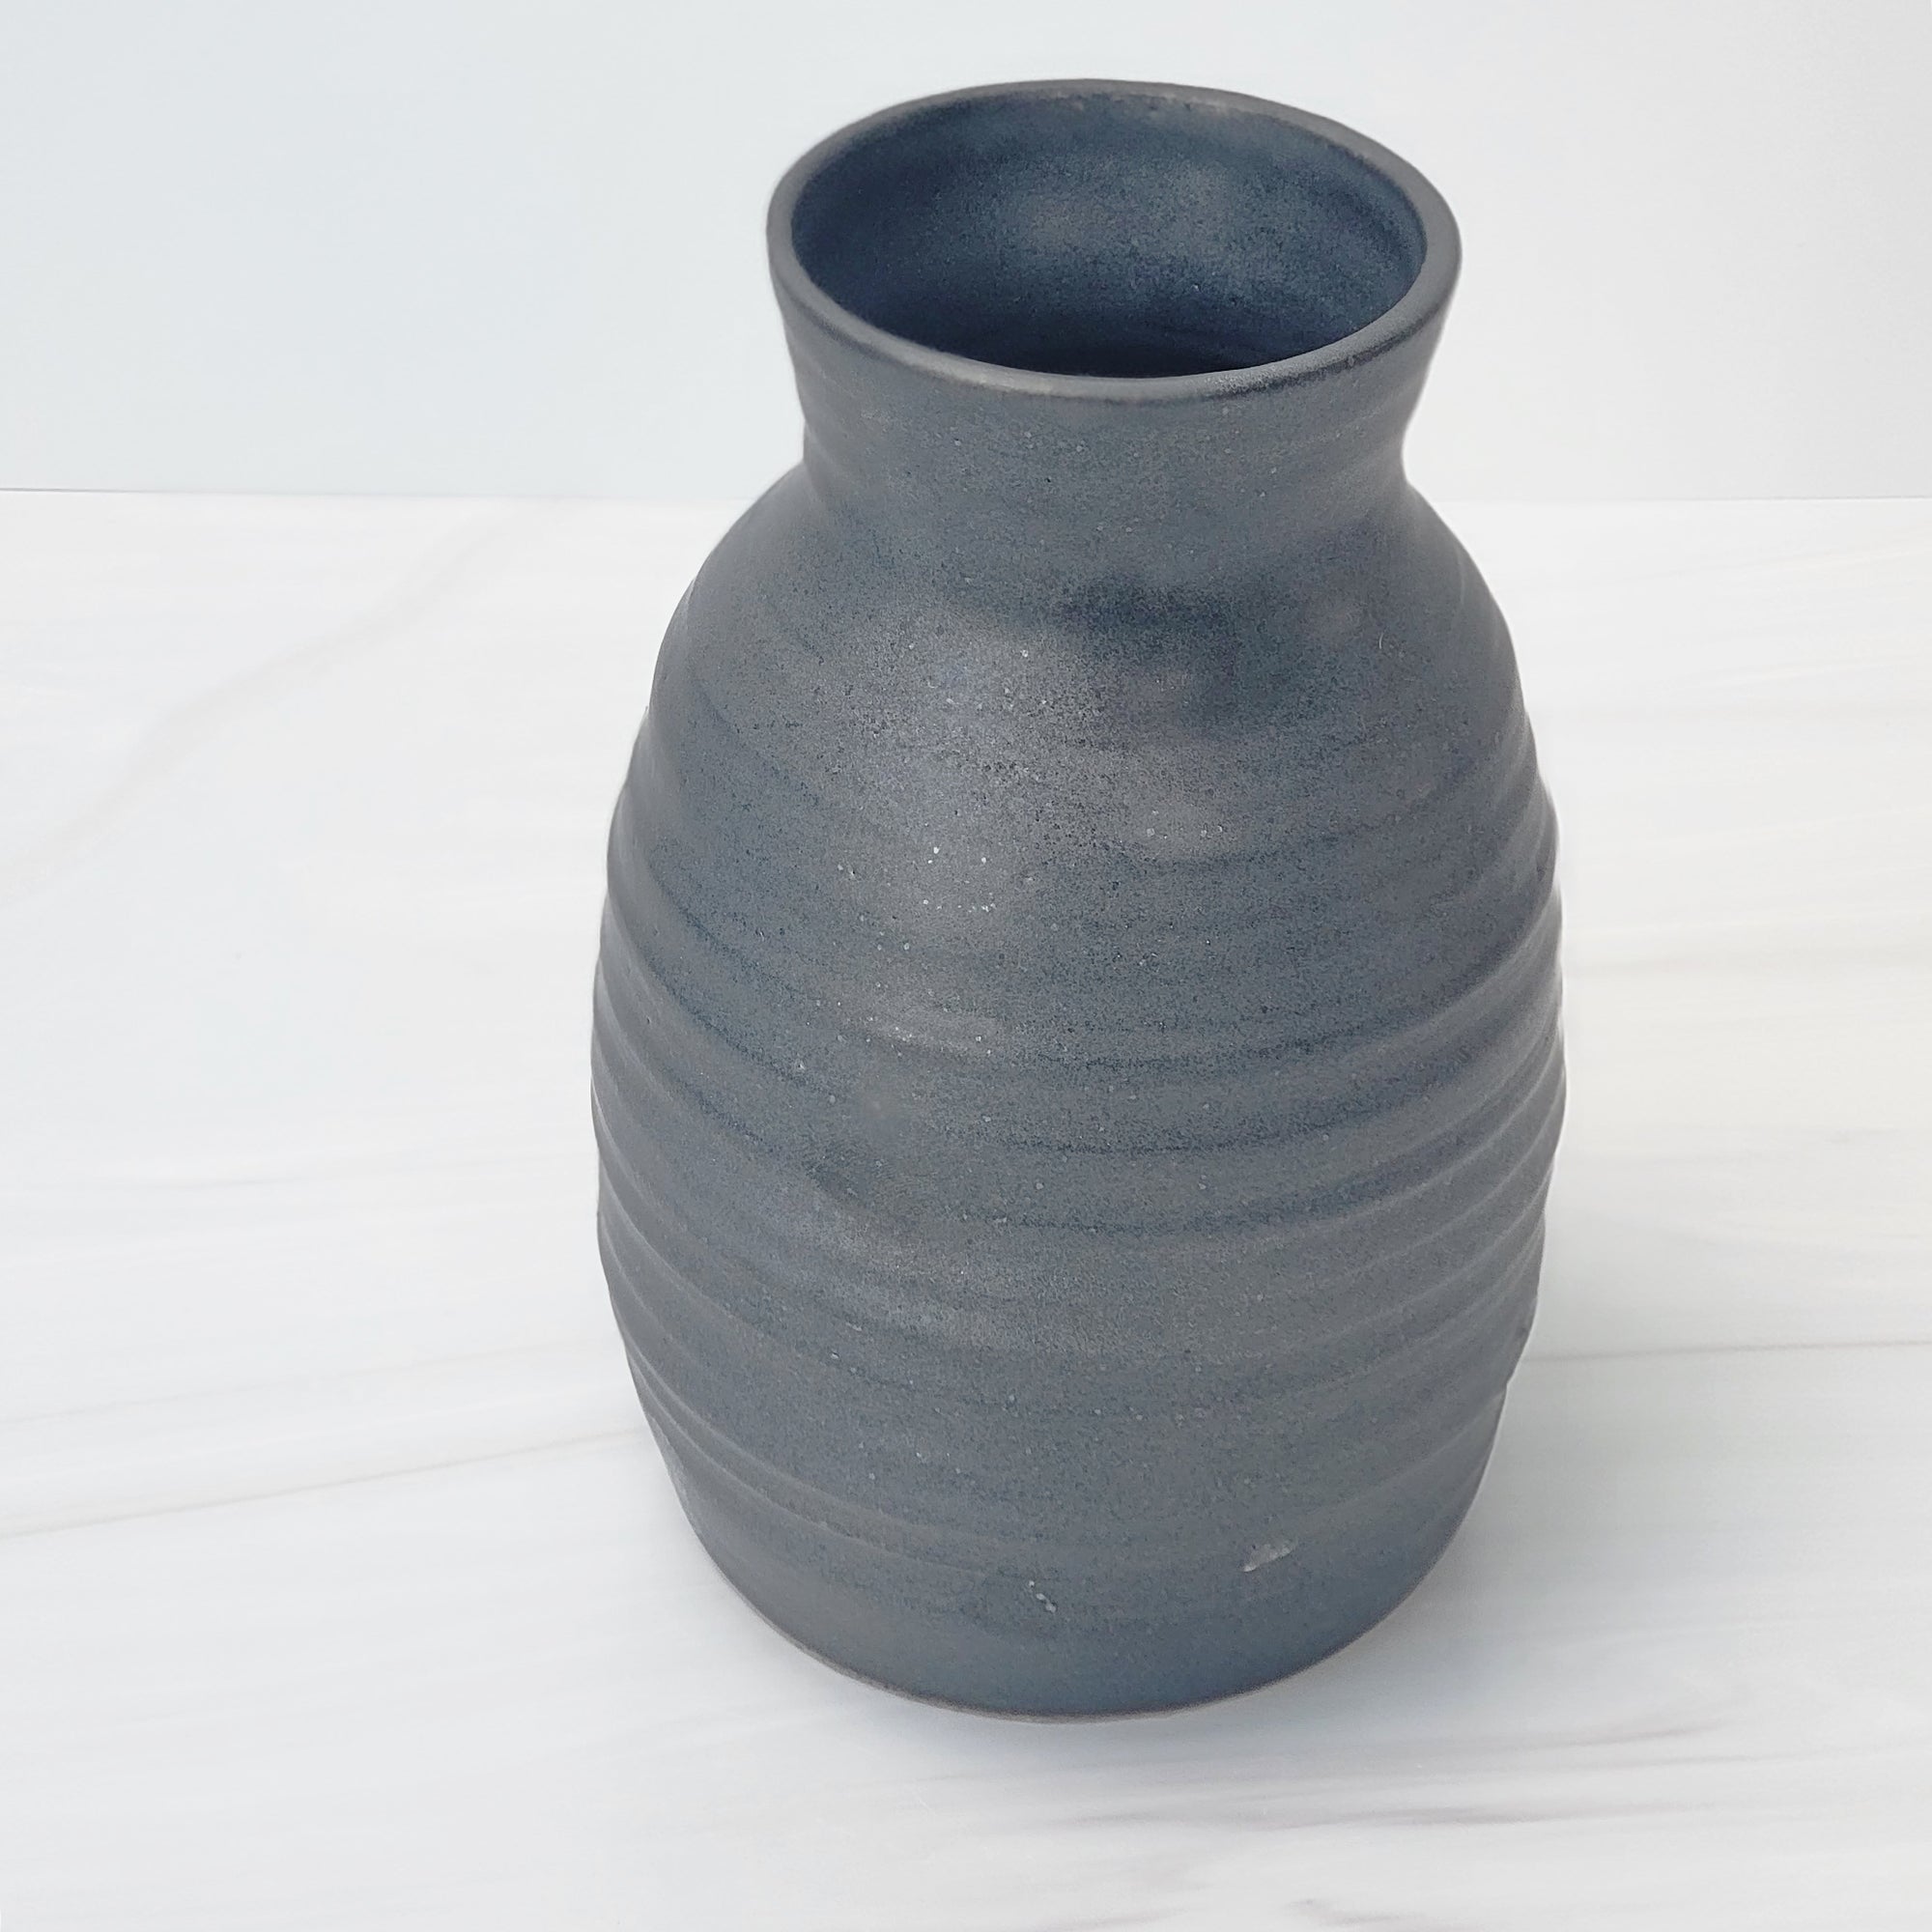 Basalt black speckle ceramic vase